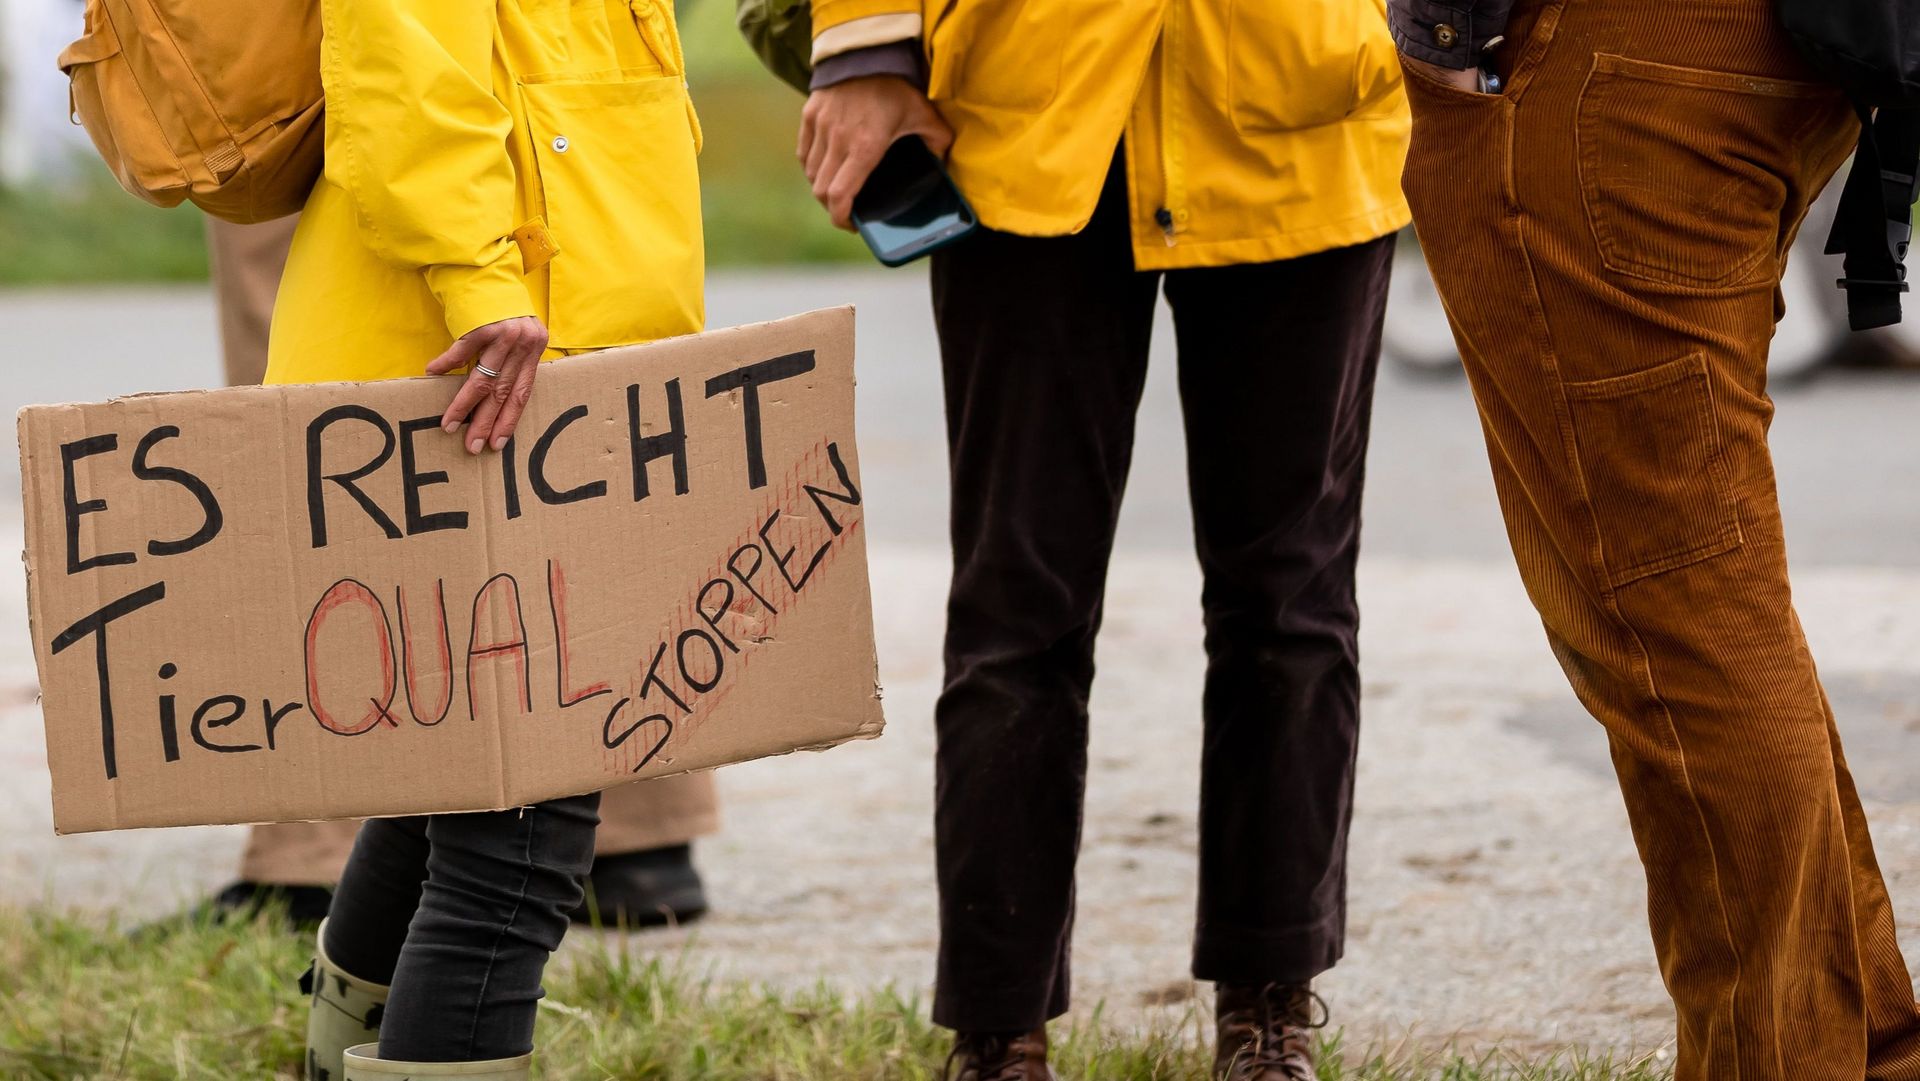 Demonstrationsschild "Es reicht - Tierfabriken stoppen"